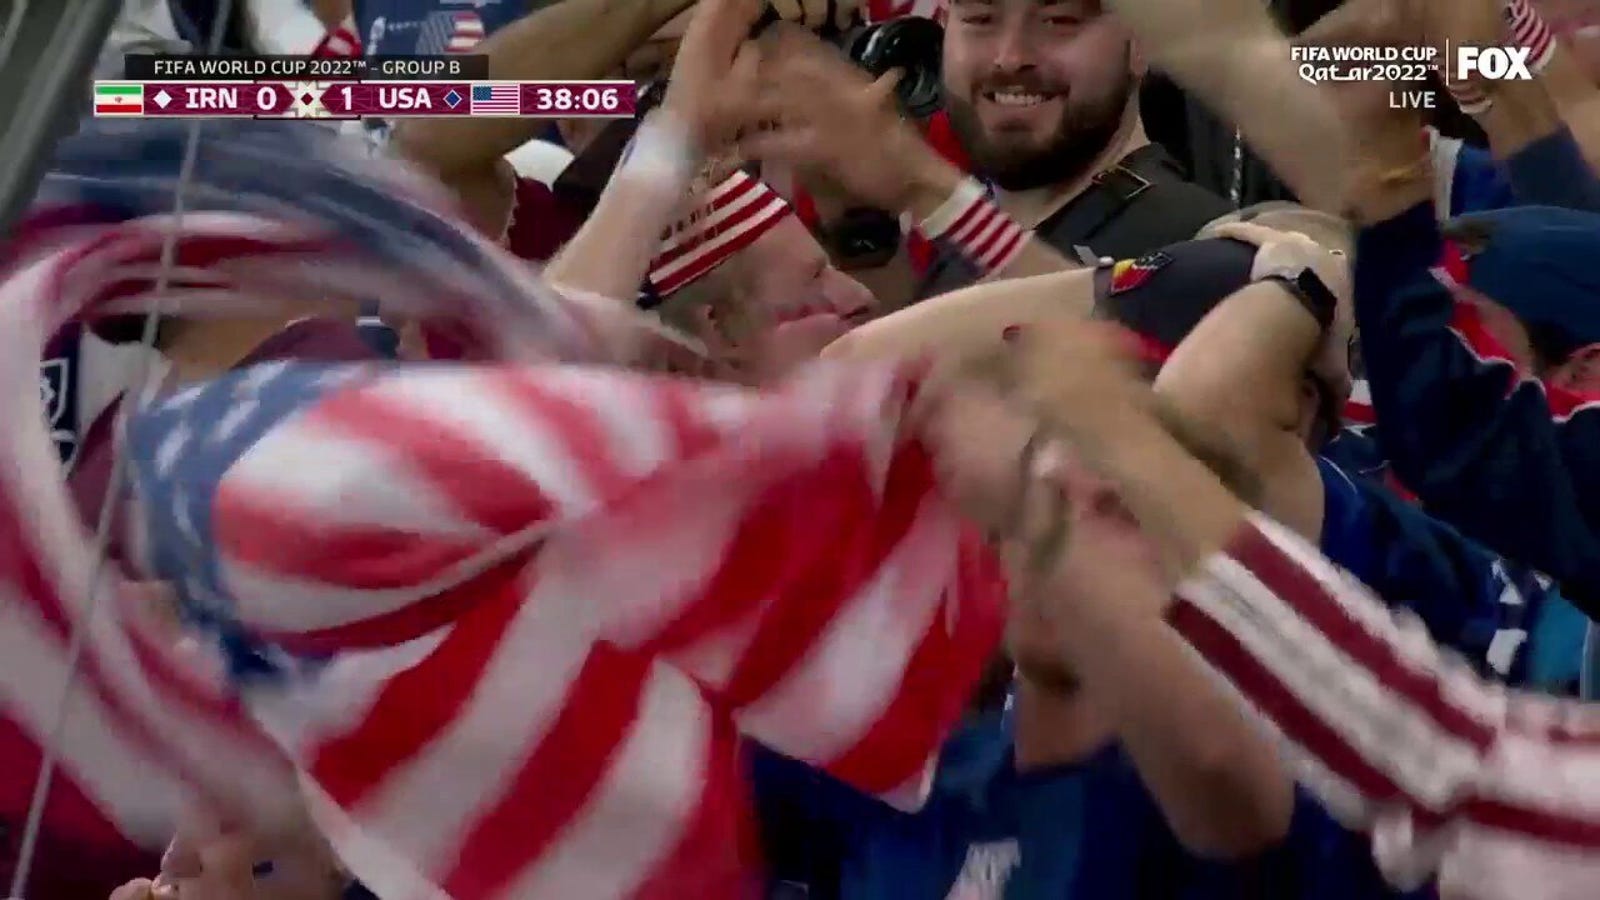 كريستيان بوليسيتش الامريكي يسجل هدفا ضد ايران في 38 دقيقة |  كأس العالم 2022